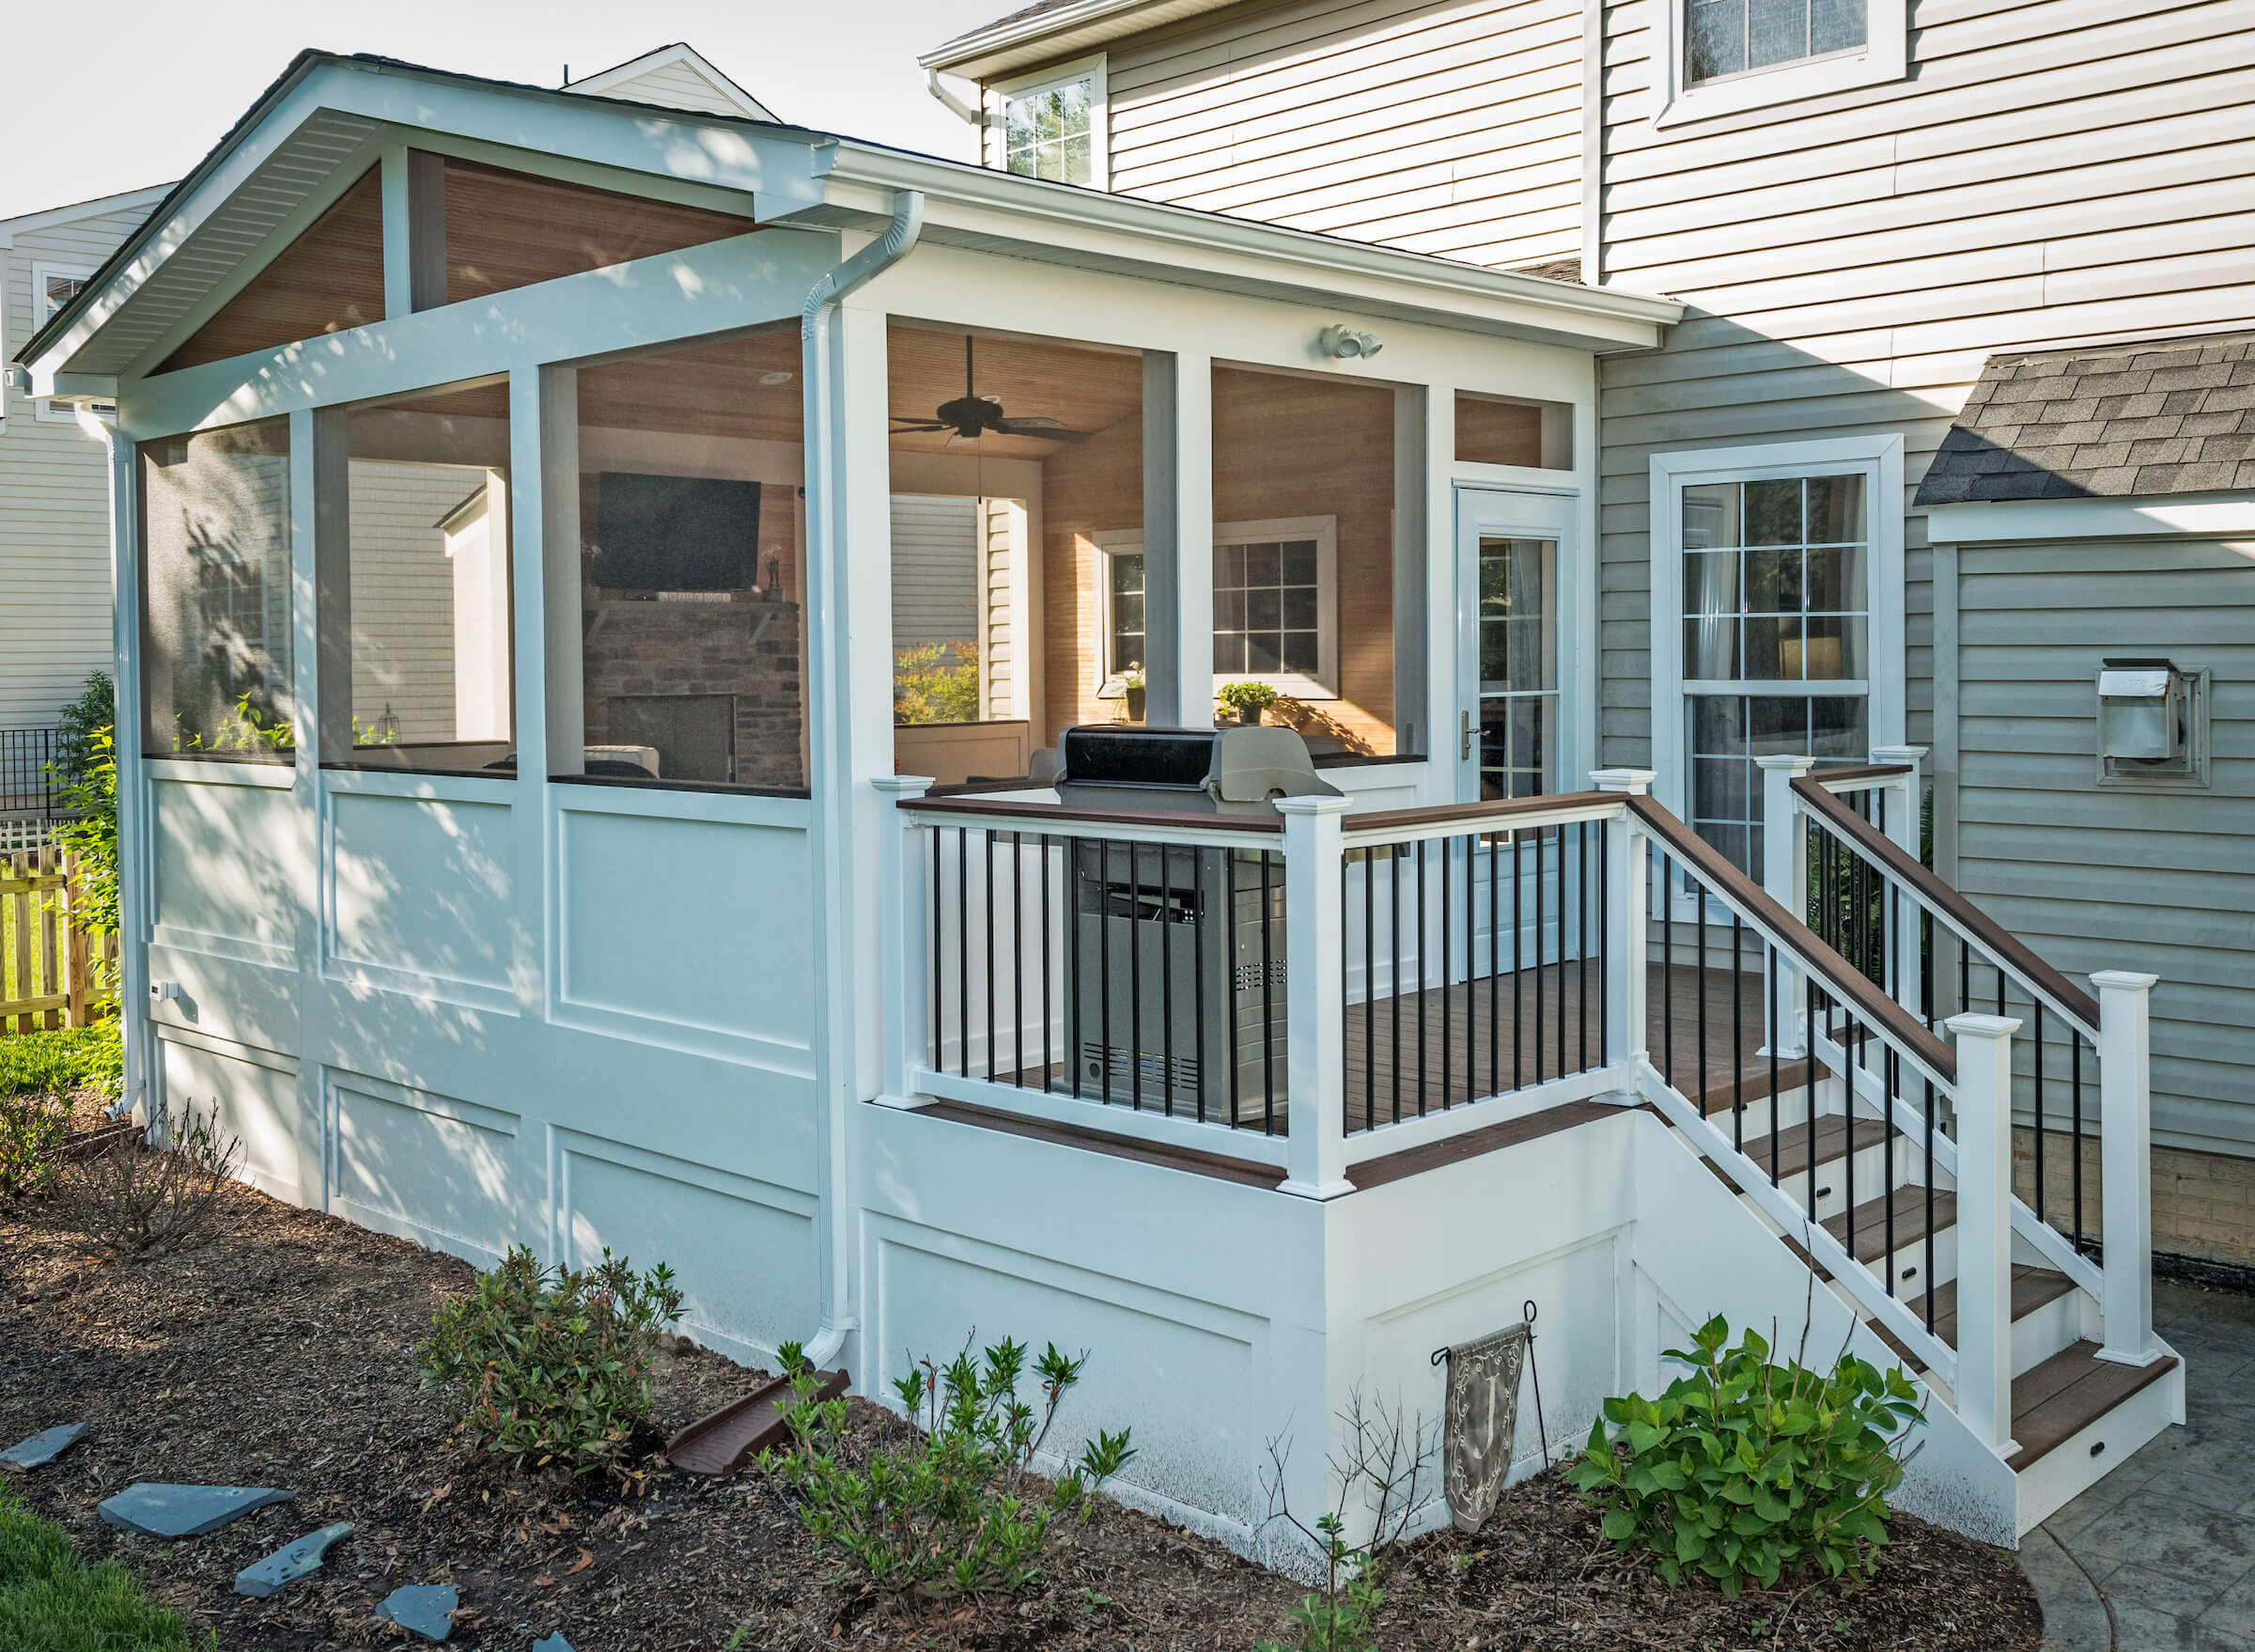 Enclosing A Porch Idea To Make 3 Season Porch Enclosed Front Porches Front Porch Design Porch Windows